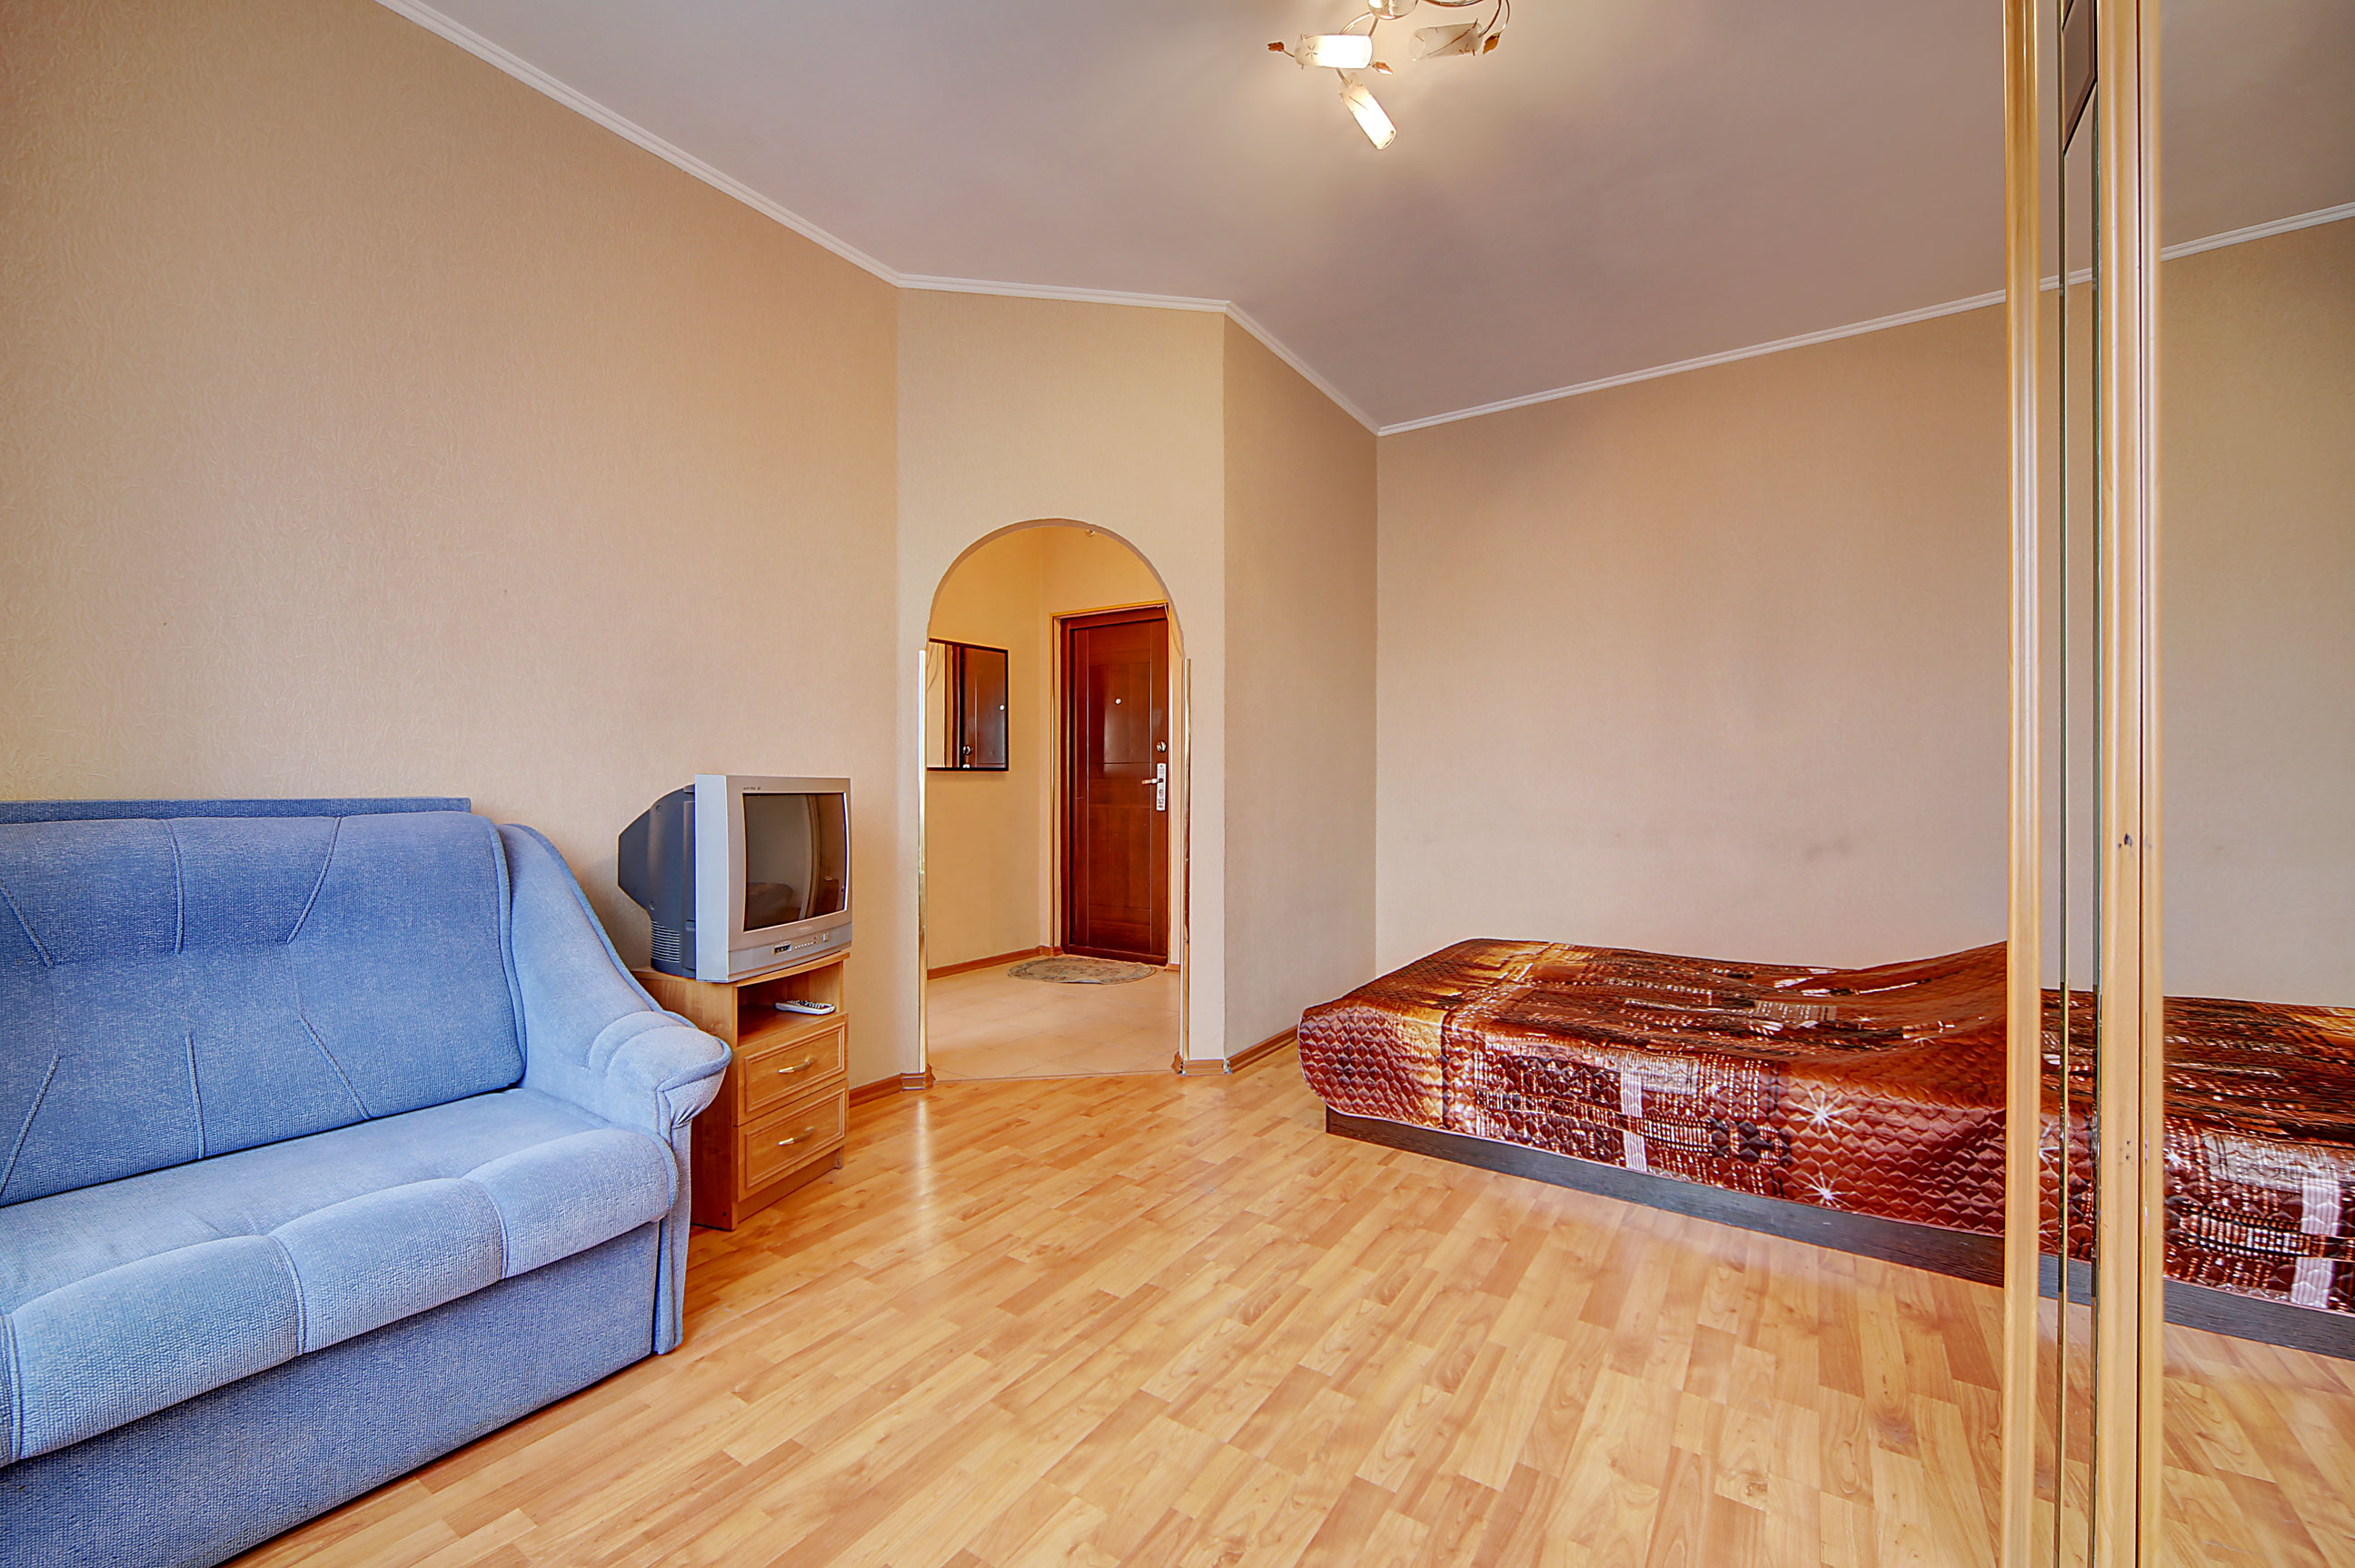 Квартиры в калининграде посуточно без посредников недорого с фото центре